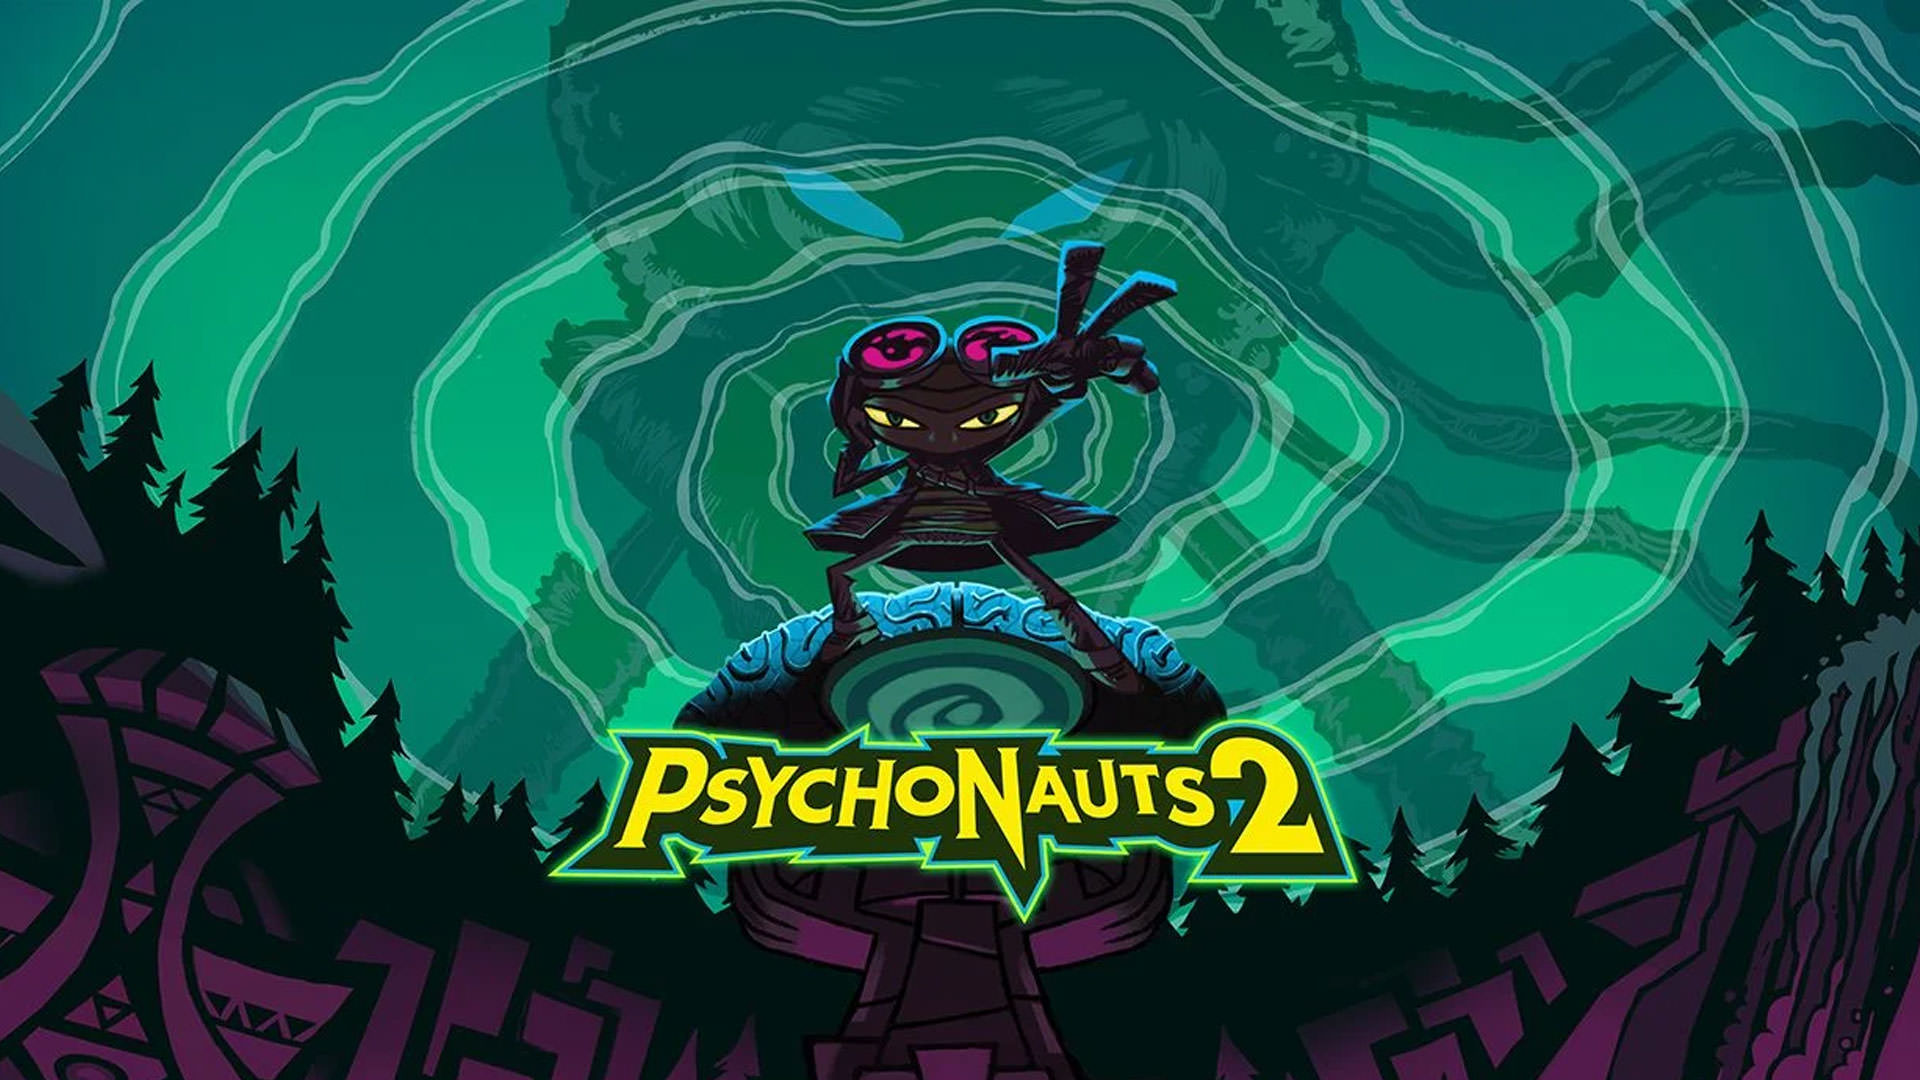 شخصیت اصلی بازی Psychonauts 2 با عینک بزرگ و خاص خود در زمینه ای سبز